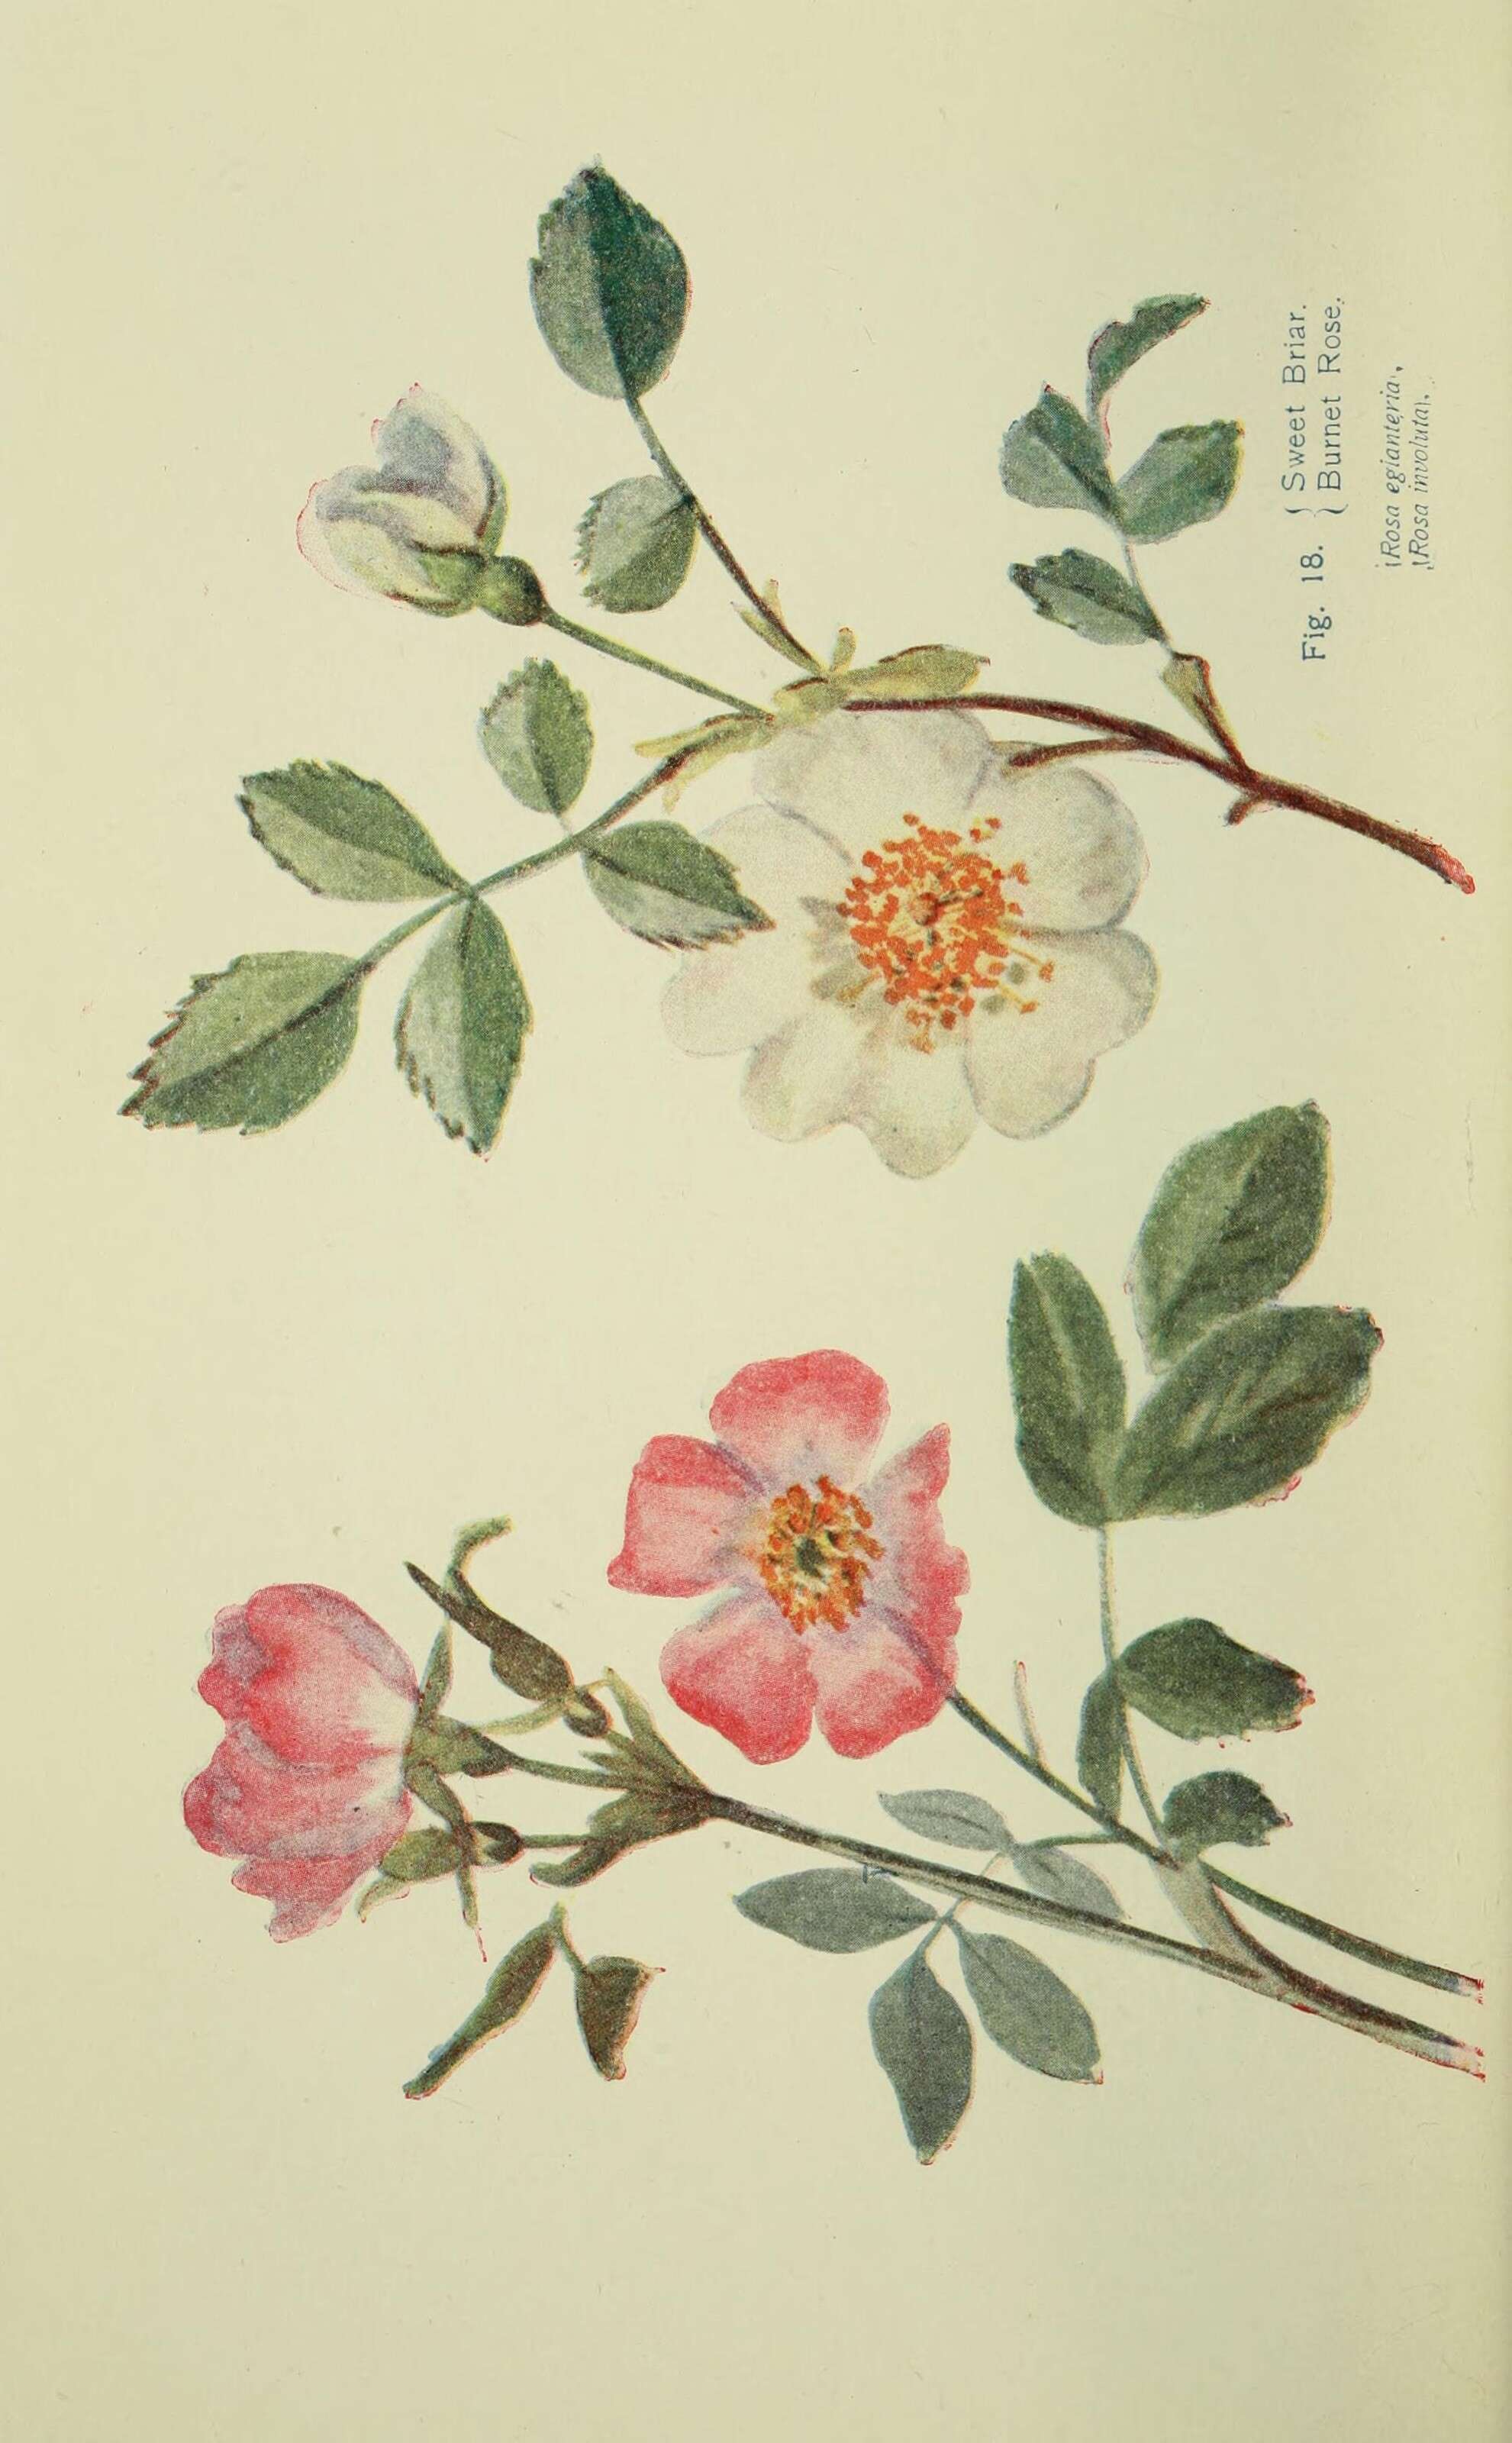 Image de rosier rouillé